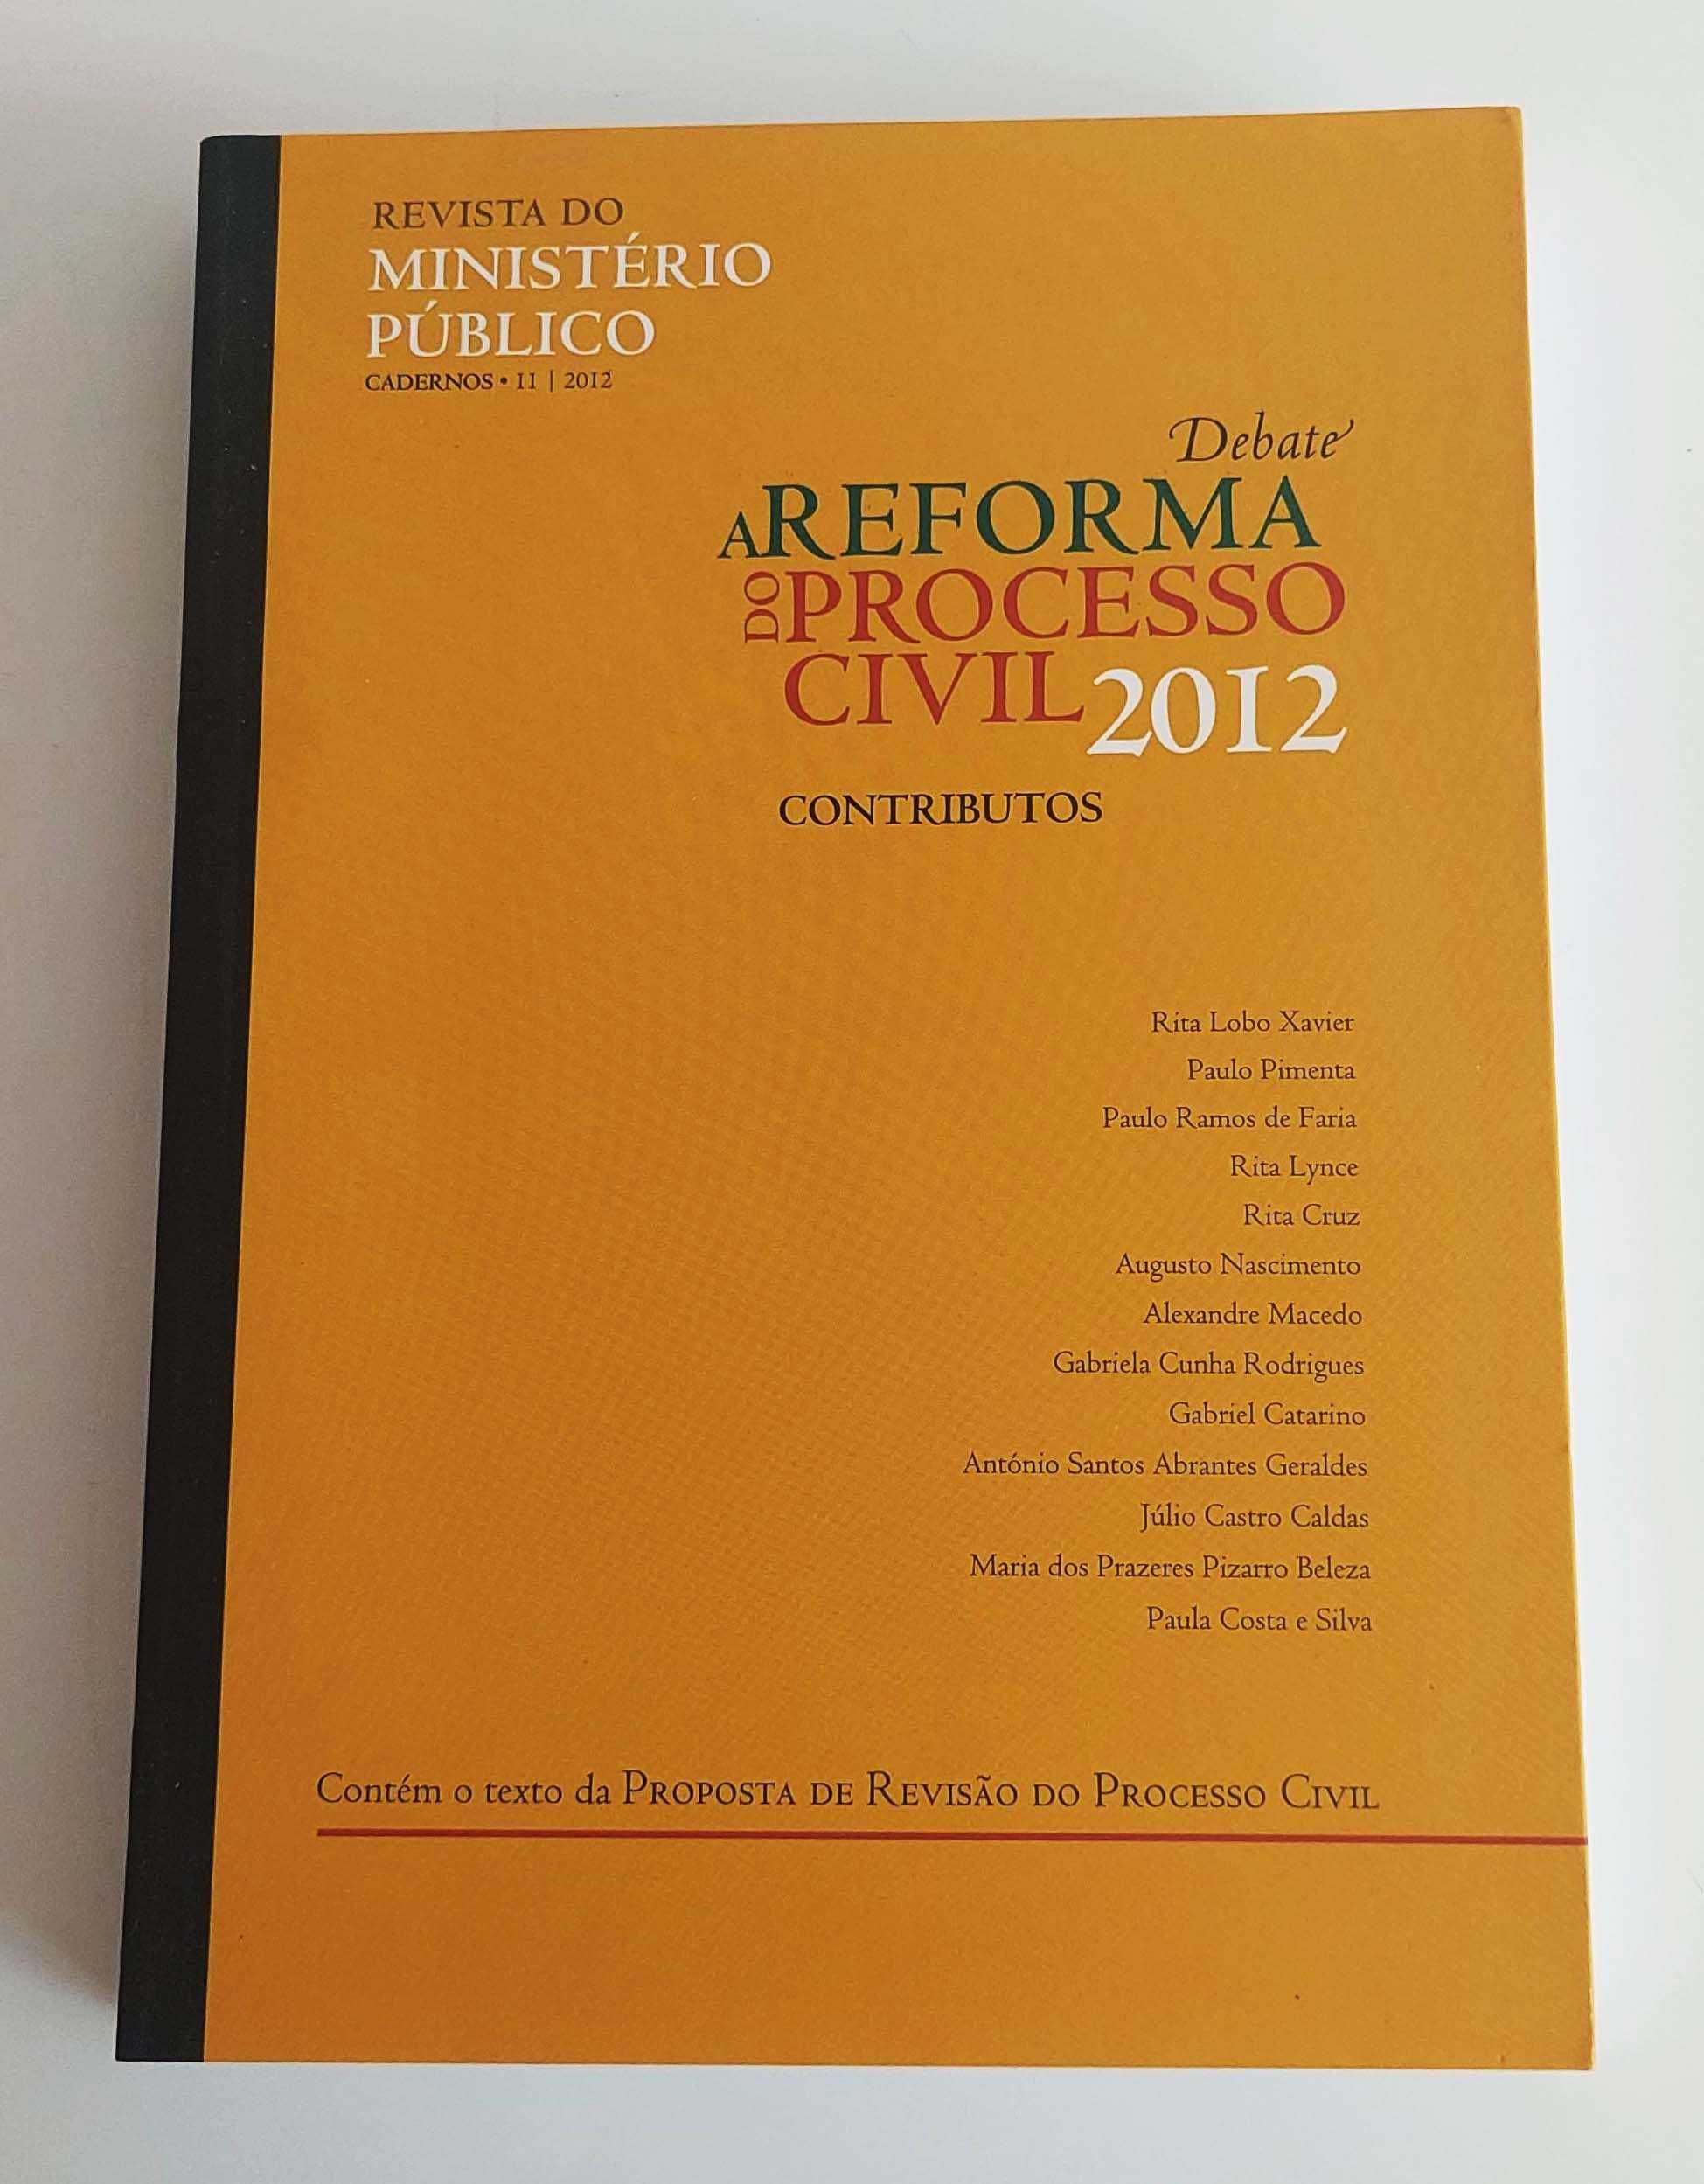 Revista do Ministério Público Debate a reforma de processo civil